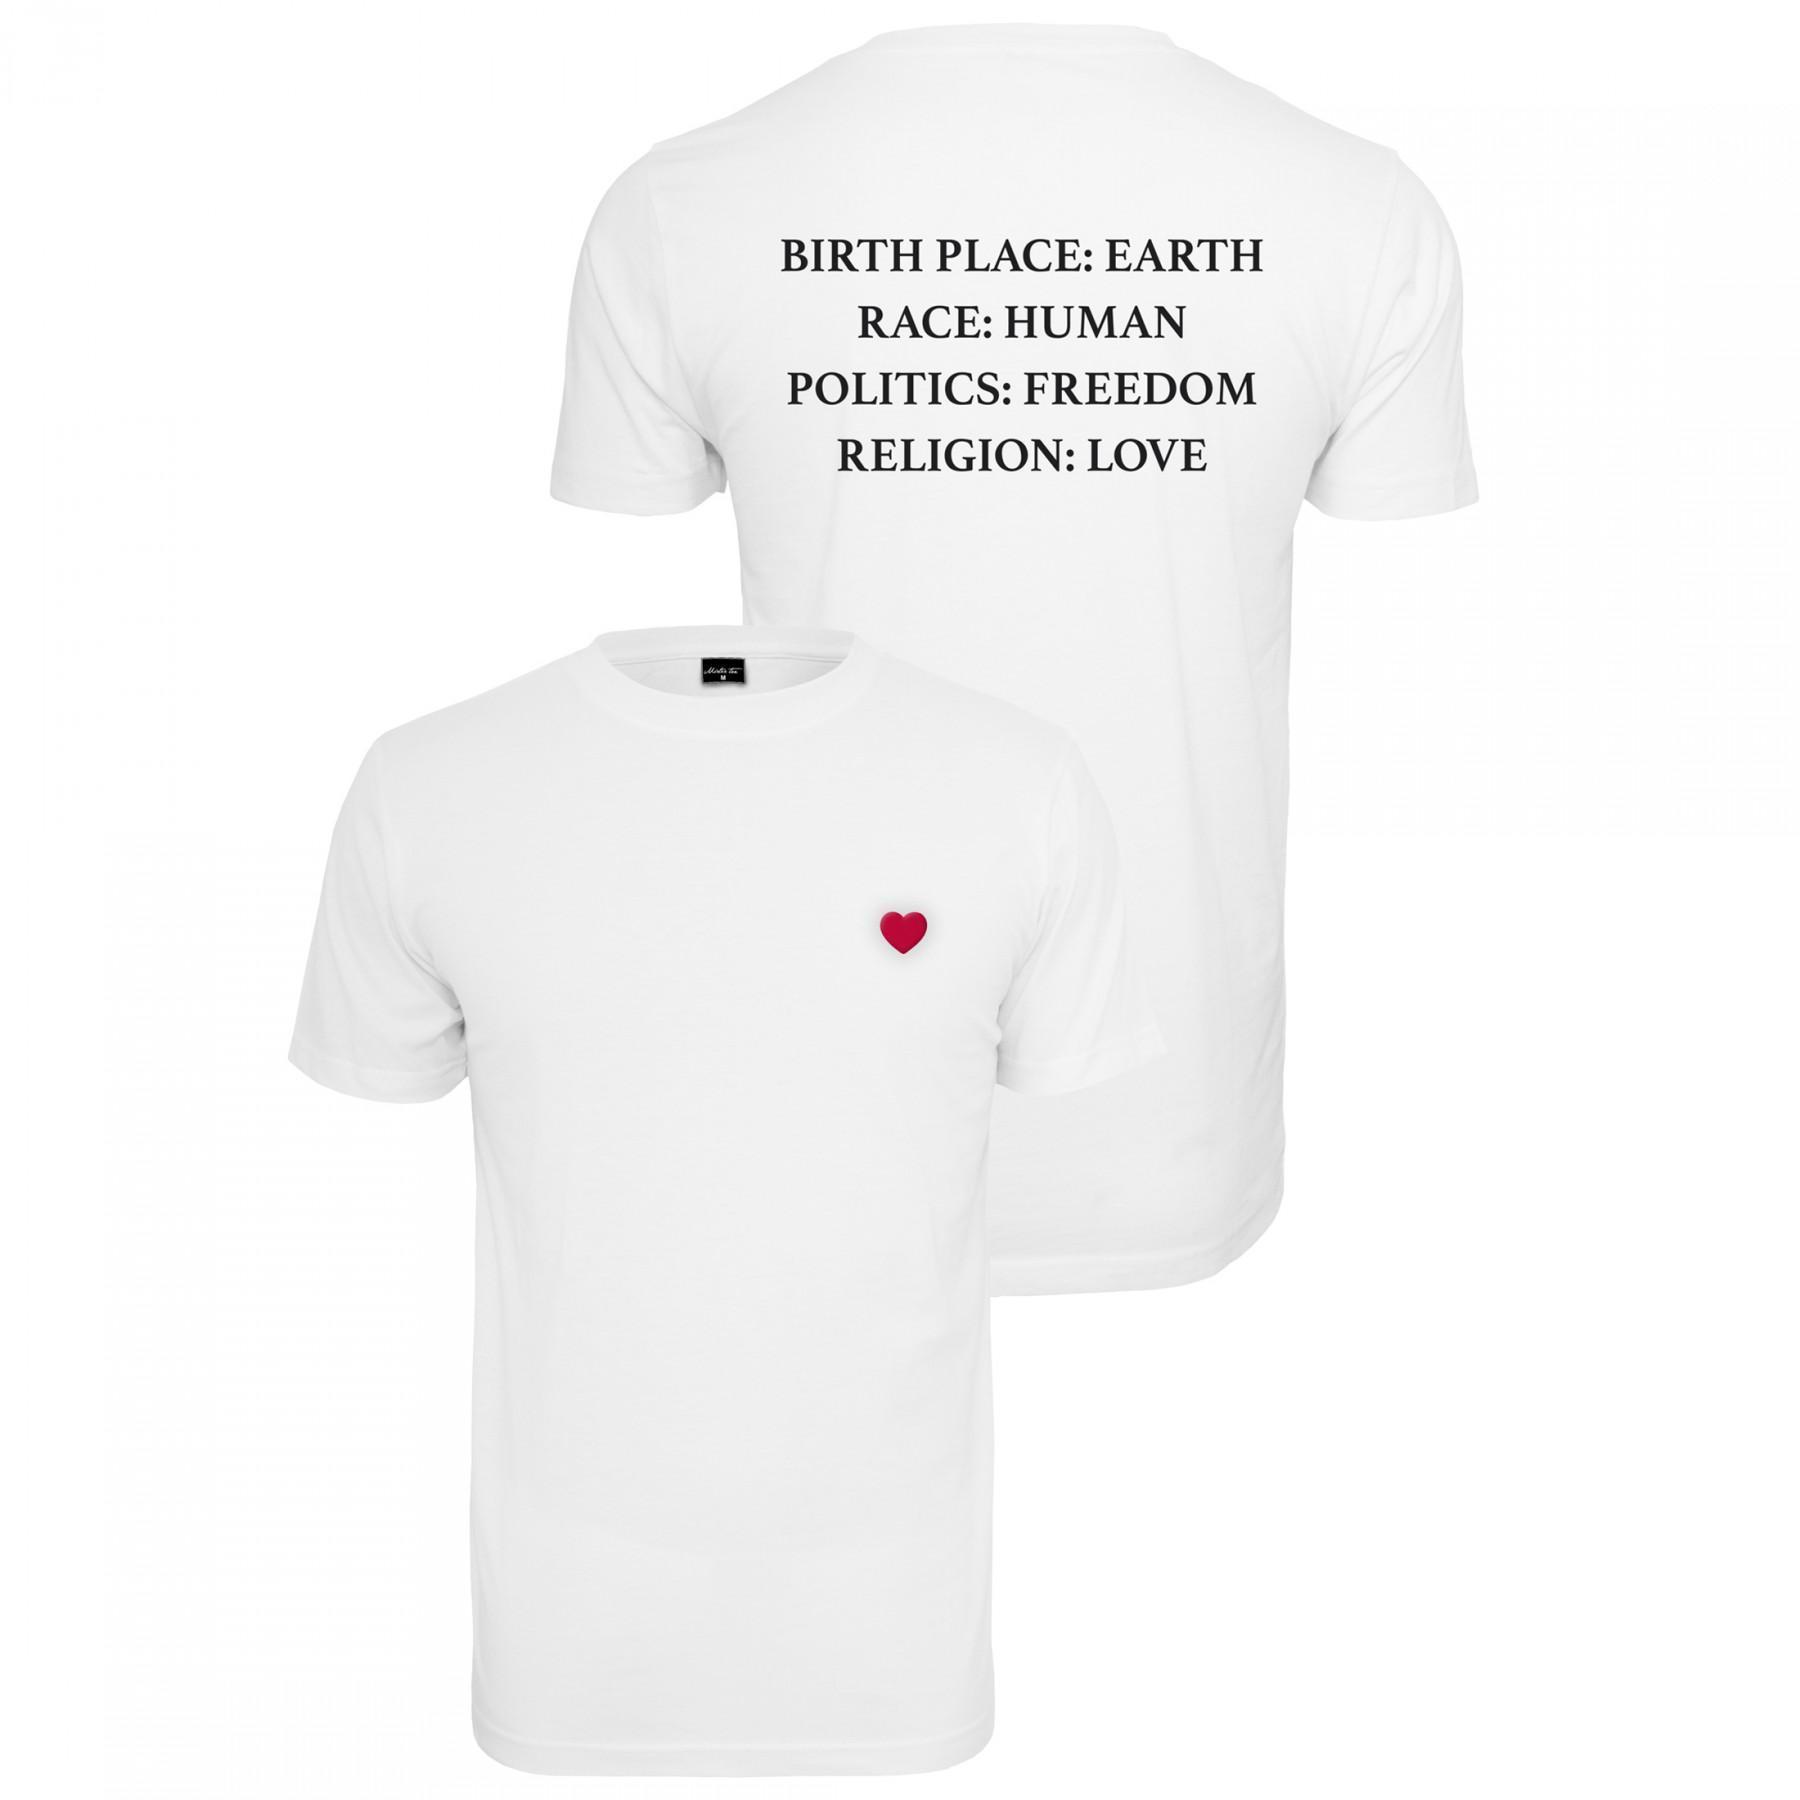 T-shirt donna Mister Tee heart XXL